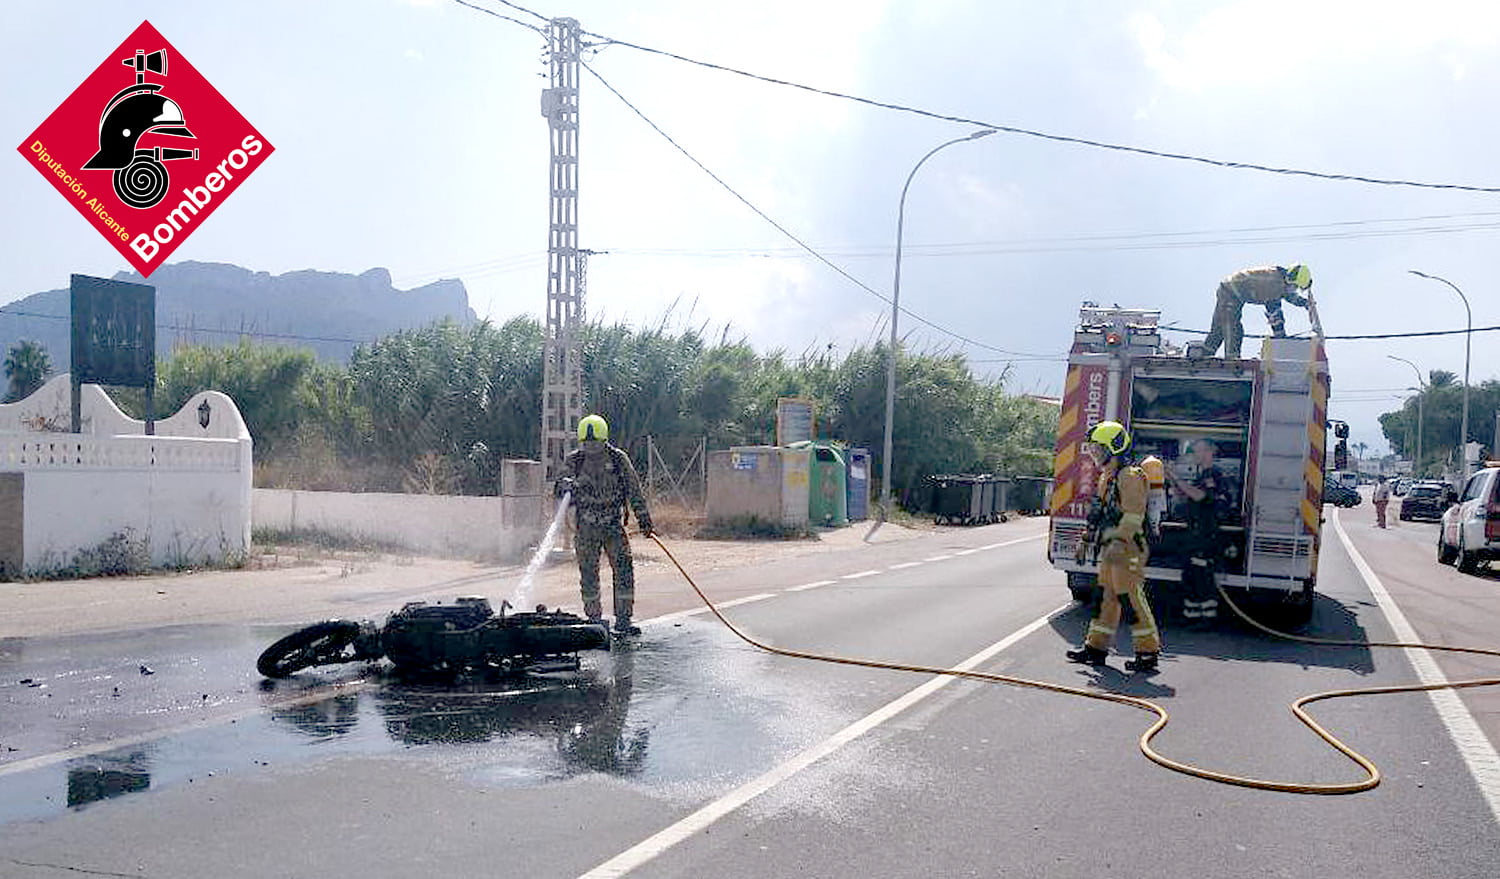 Bomberos apaga las llamas de la moto incendiada